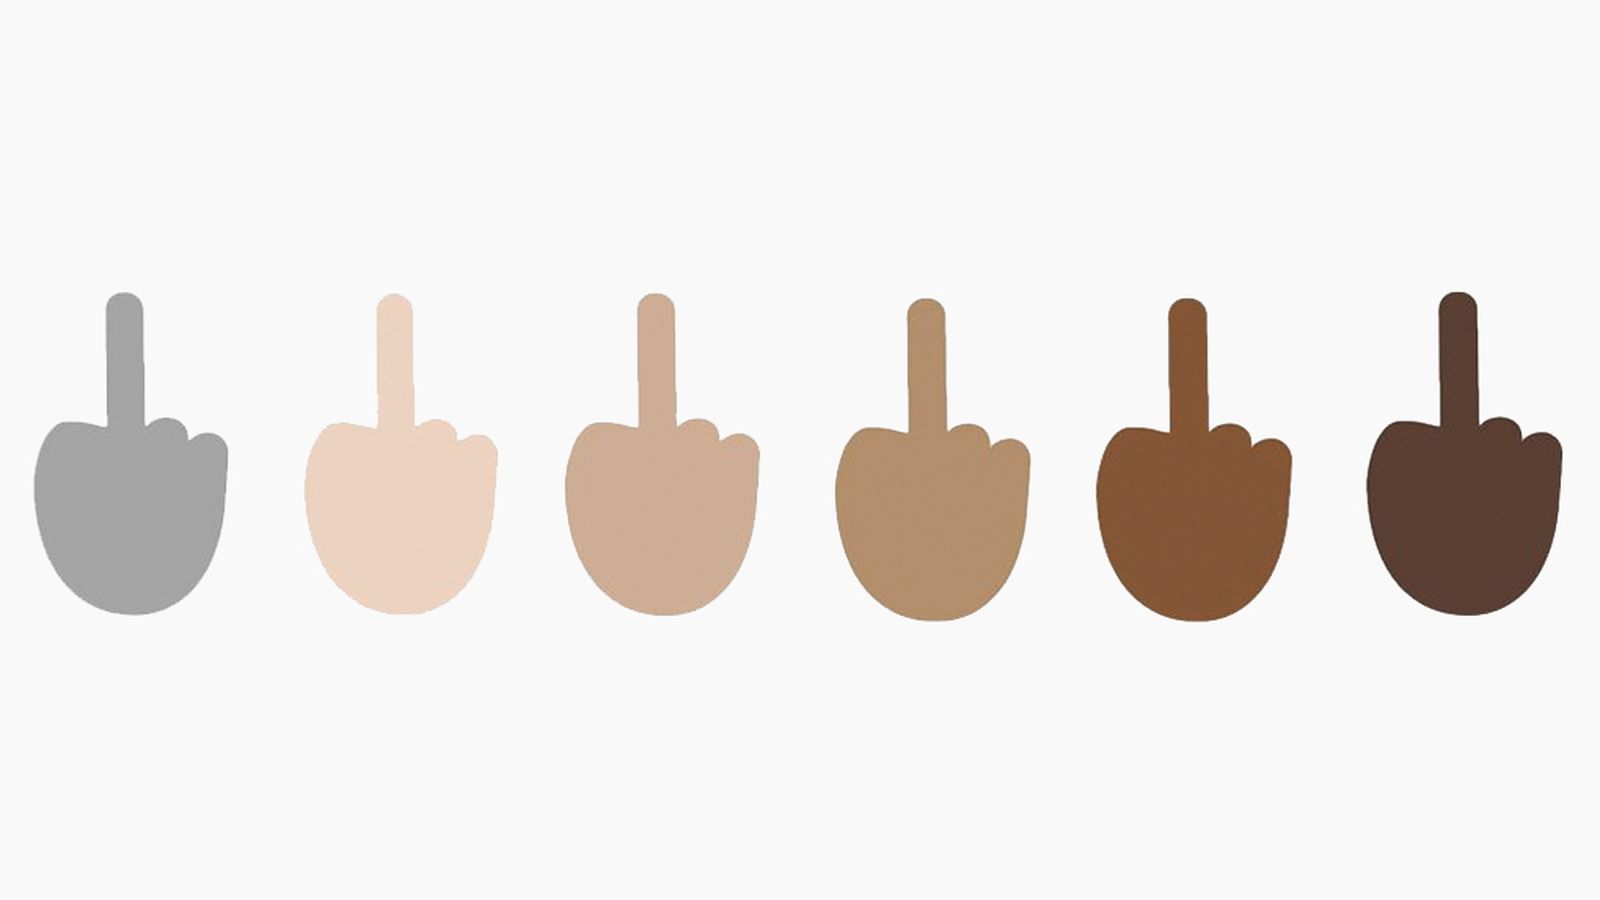 Windows 10 lets you flip a middle finger with emoji